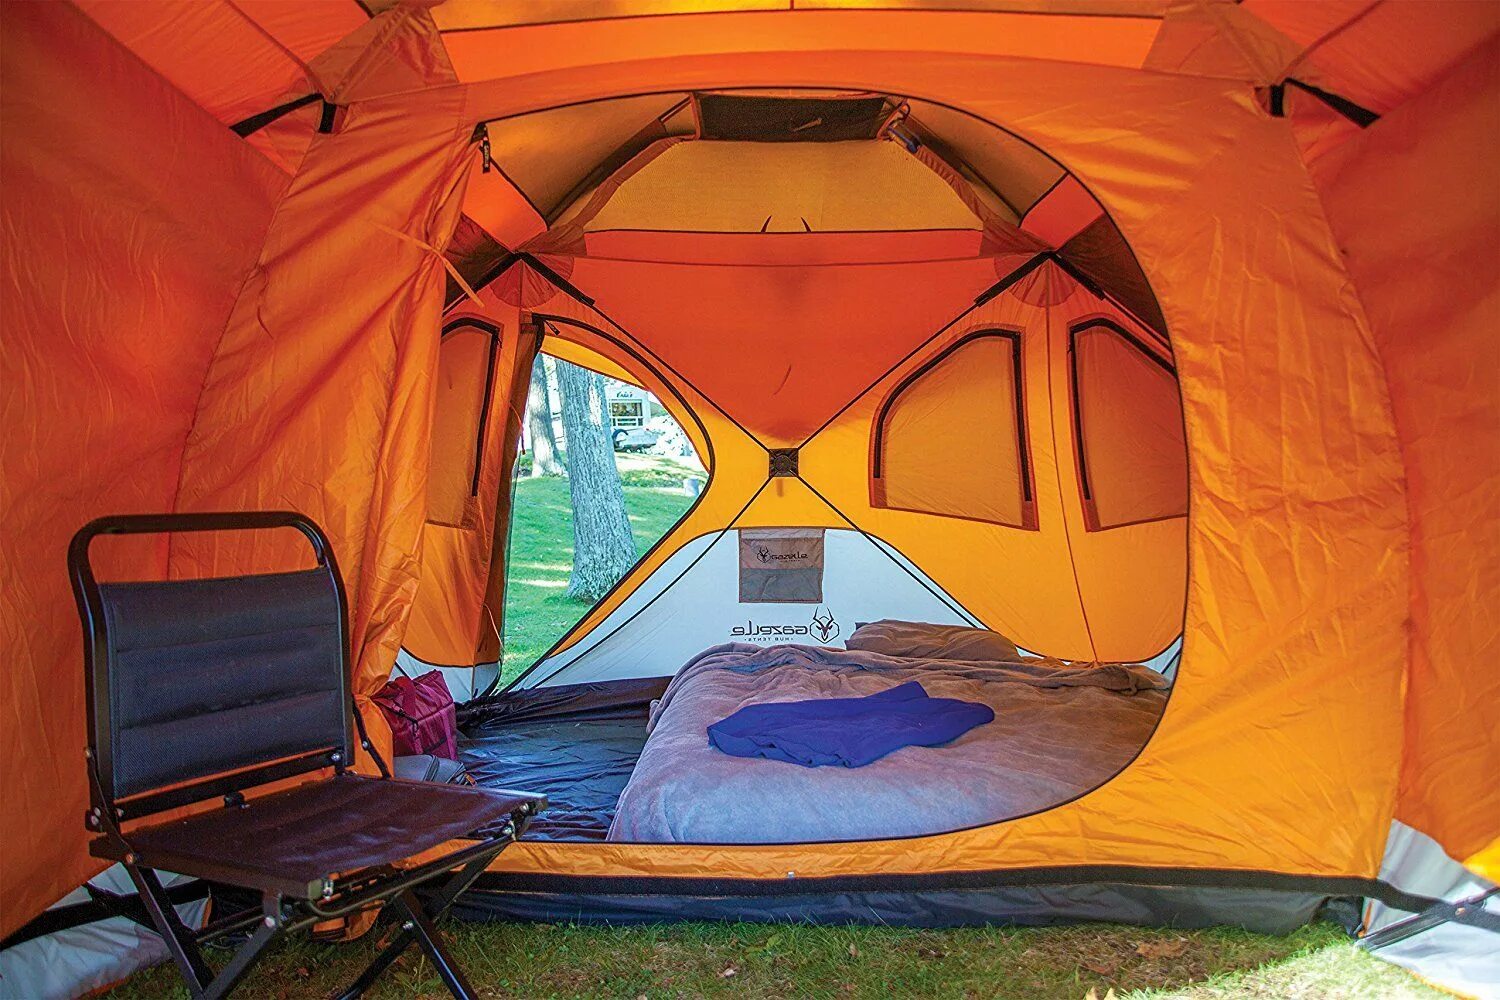 Gazelle Tent палатка t8. Палатка Camping Tent. Палатка Tiannuocheng 3021 4х мест. Палатка papallona Delta Cabin PP-206.